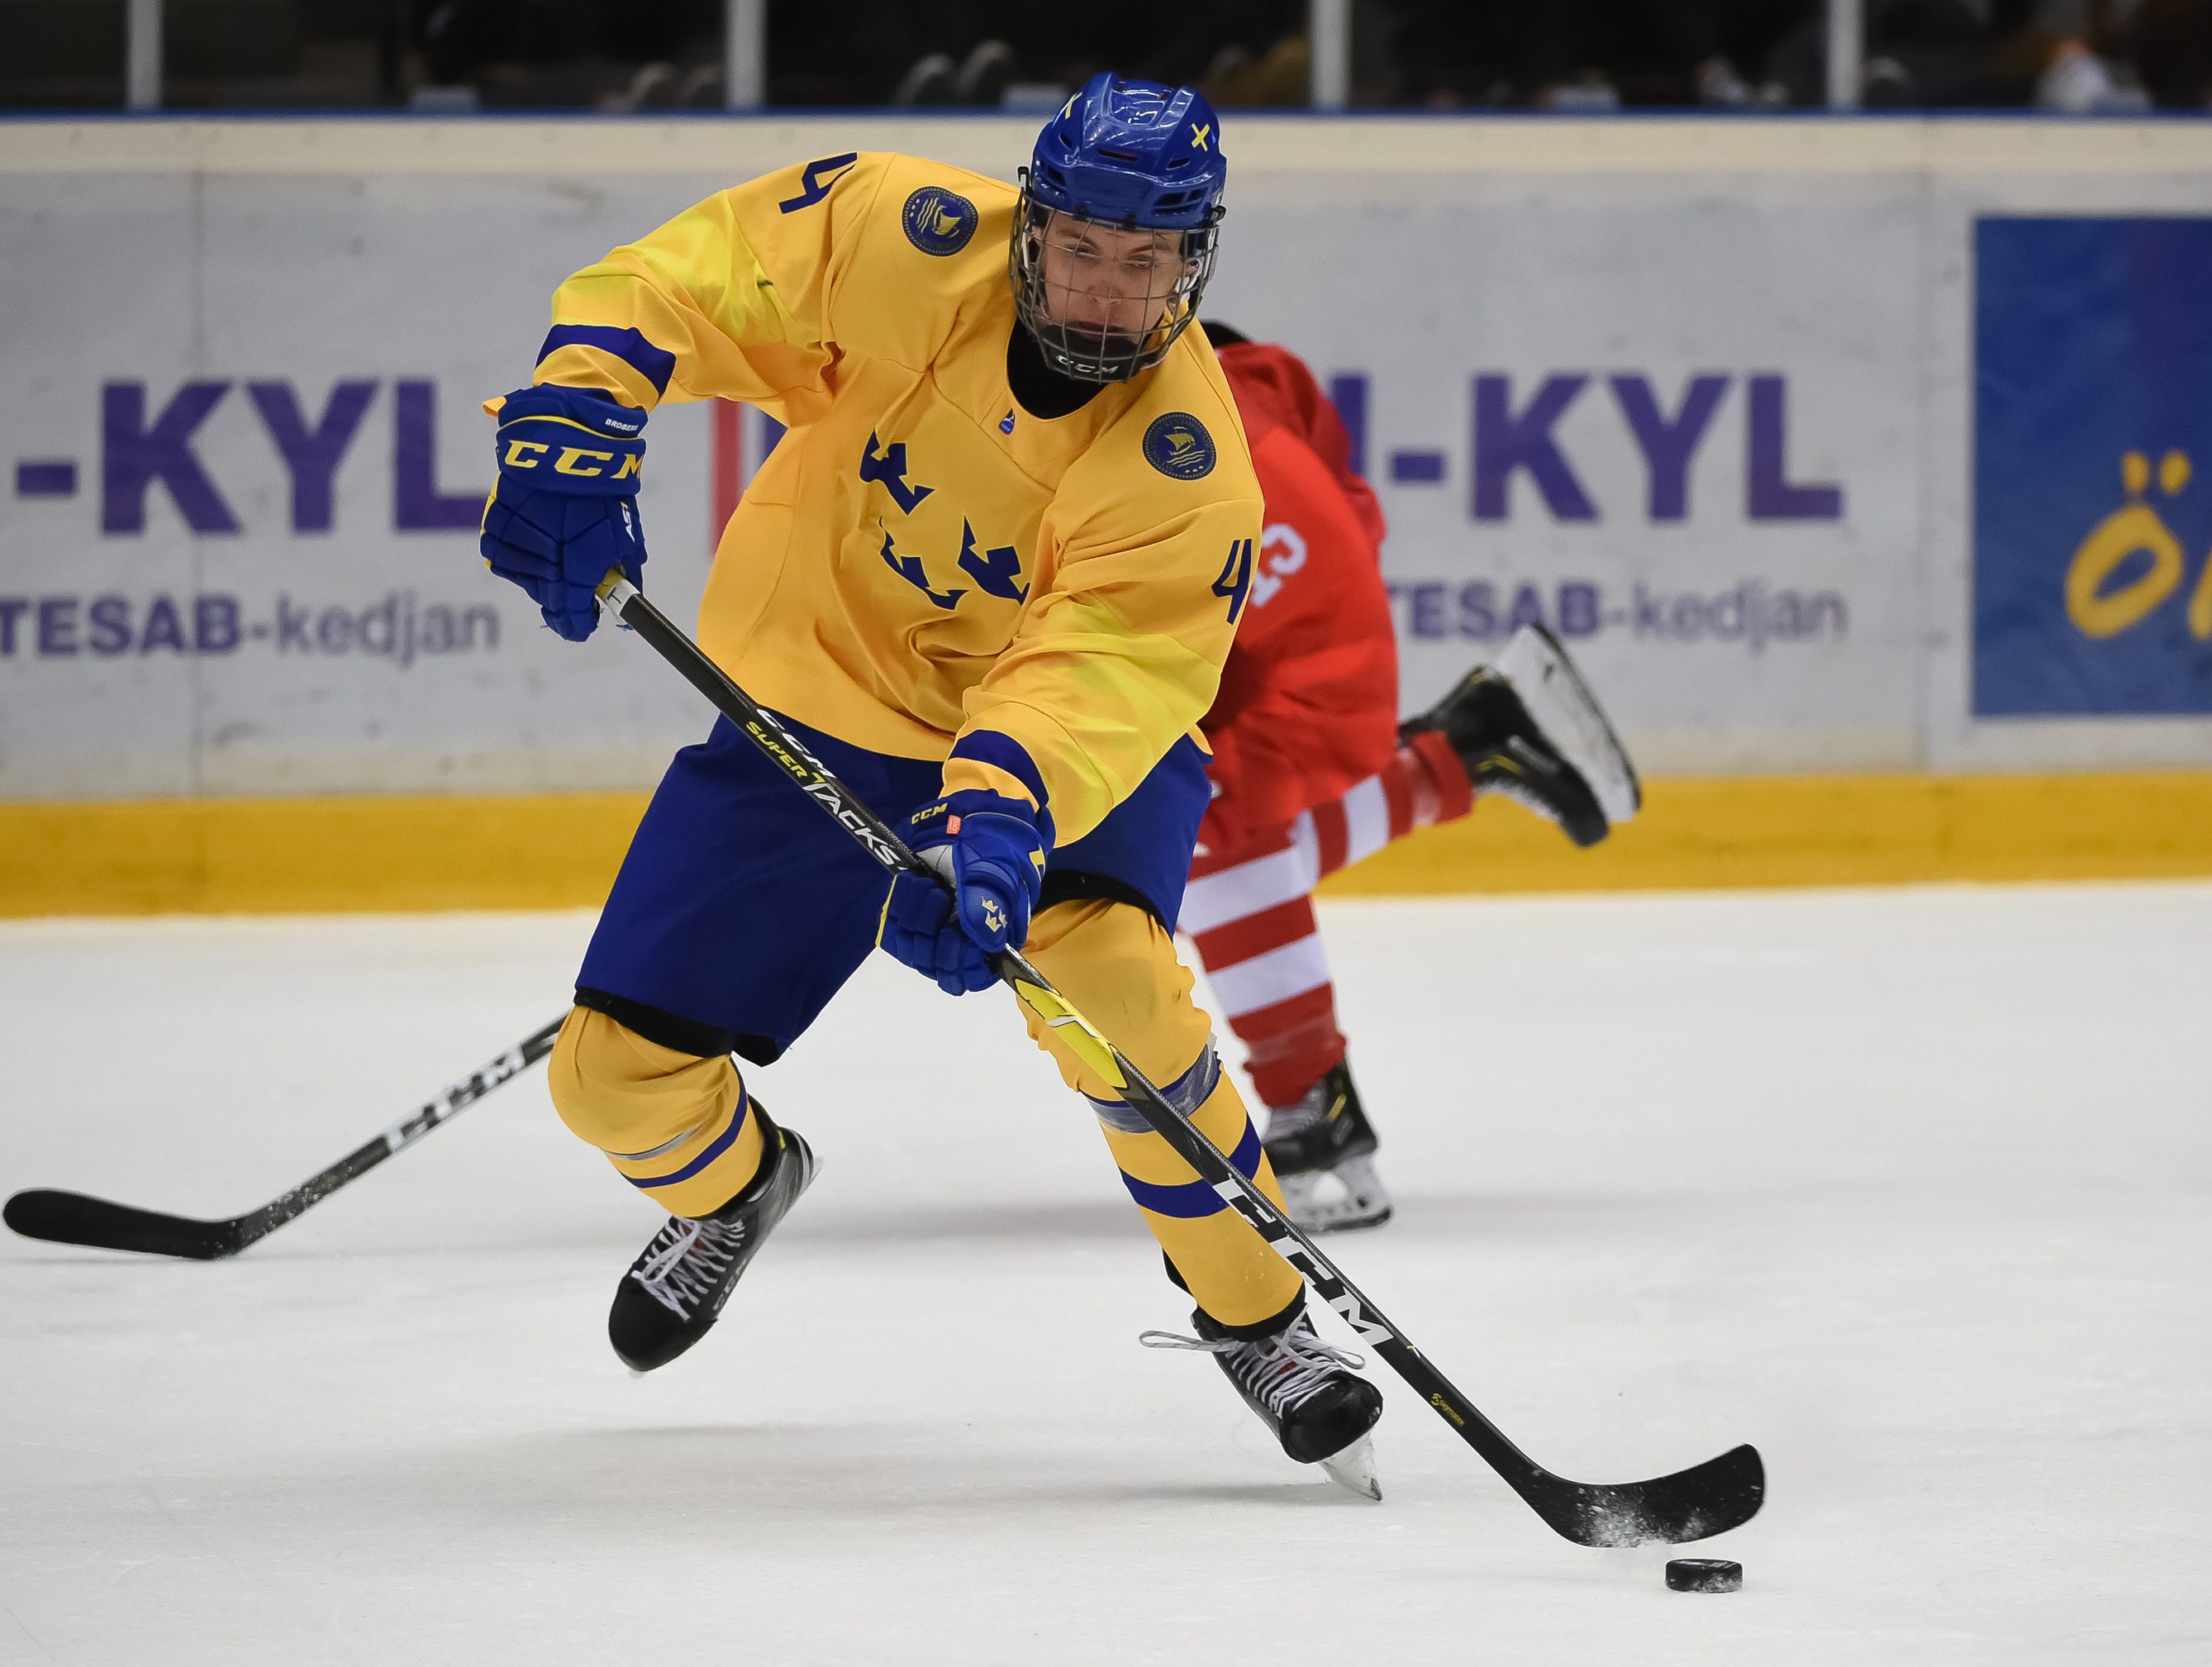 Kosice, Slovakia. 13th May, 2019. Moritz Seider, ice hockey player